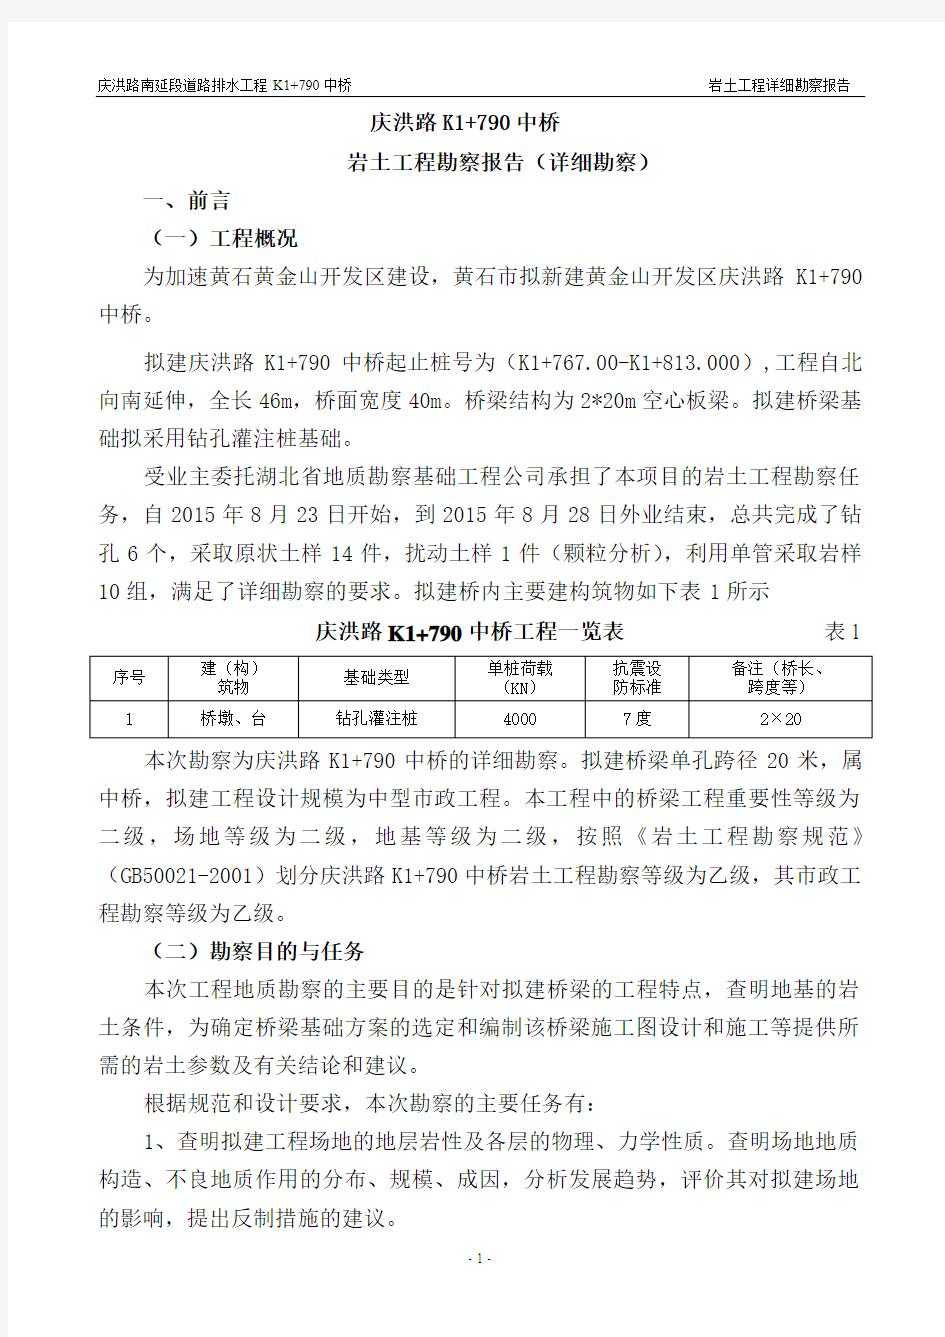 庆洪路K1 790中桥详细勘察报告(审核)